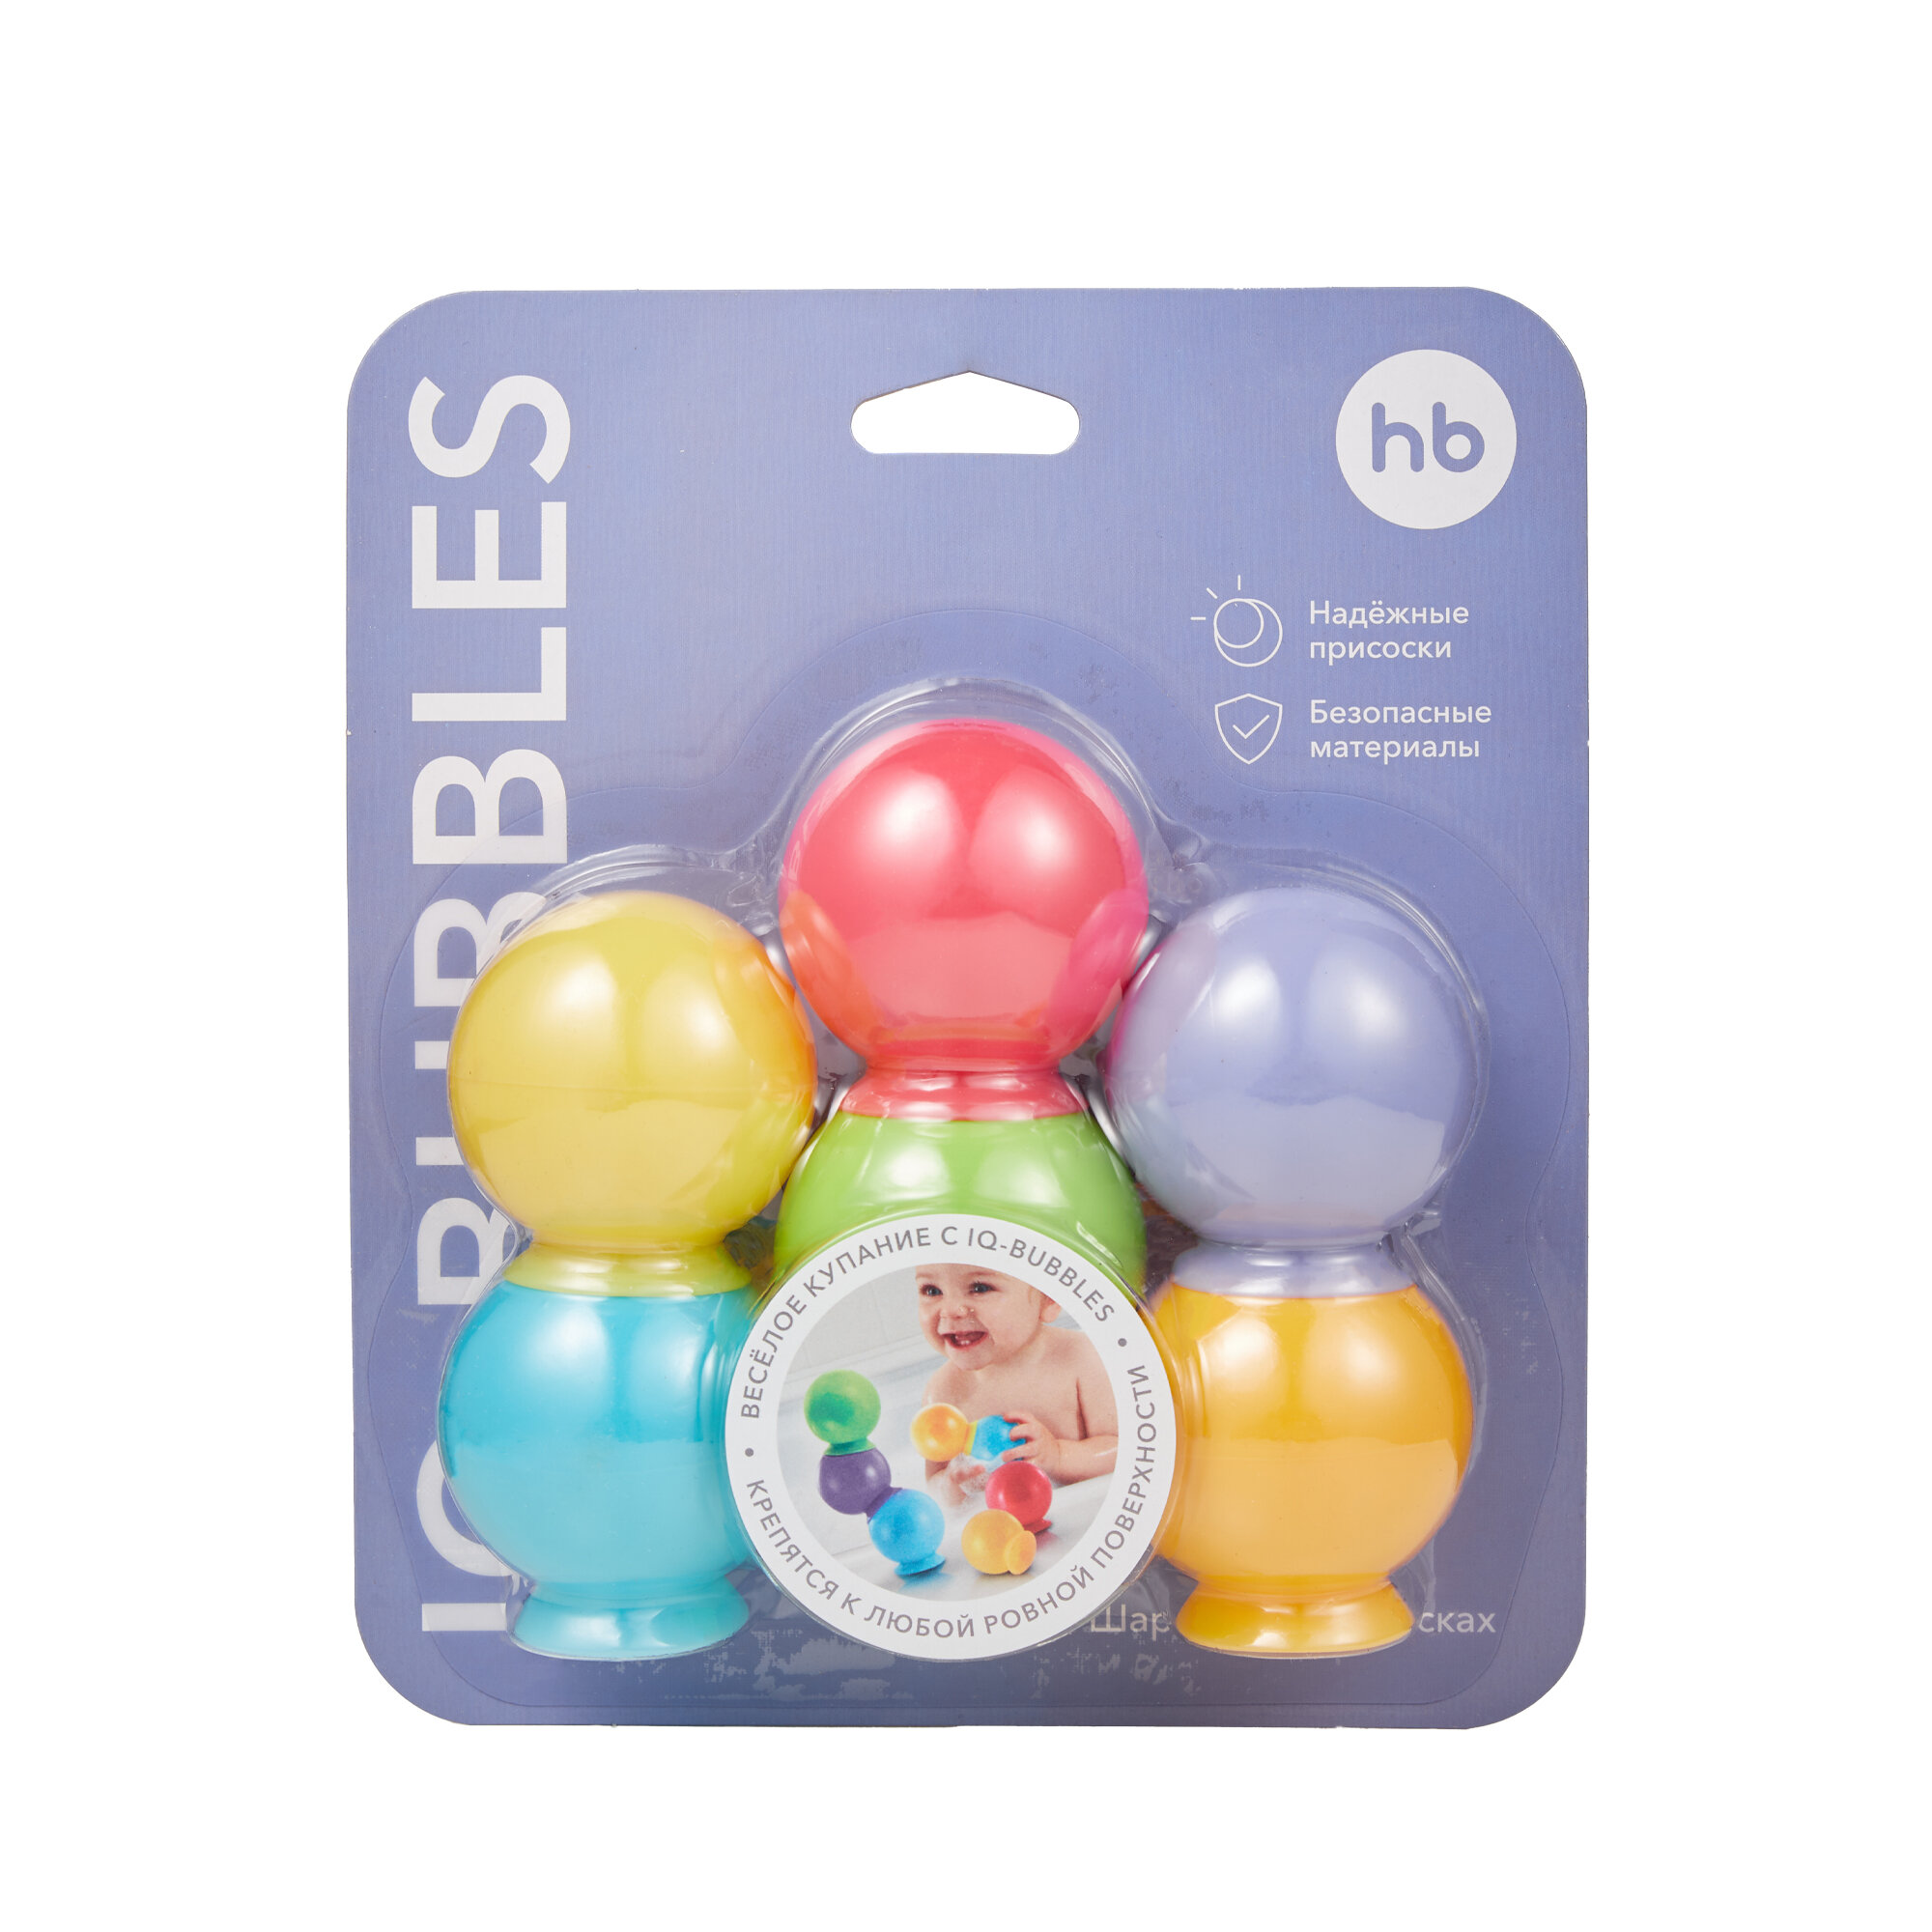 Набор игрушек для ванны Happy Baby, Iqbubbles 6 шт. - фото №5